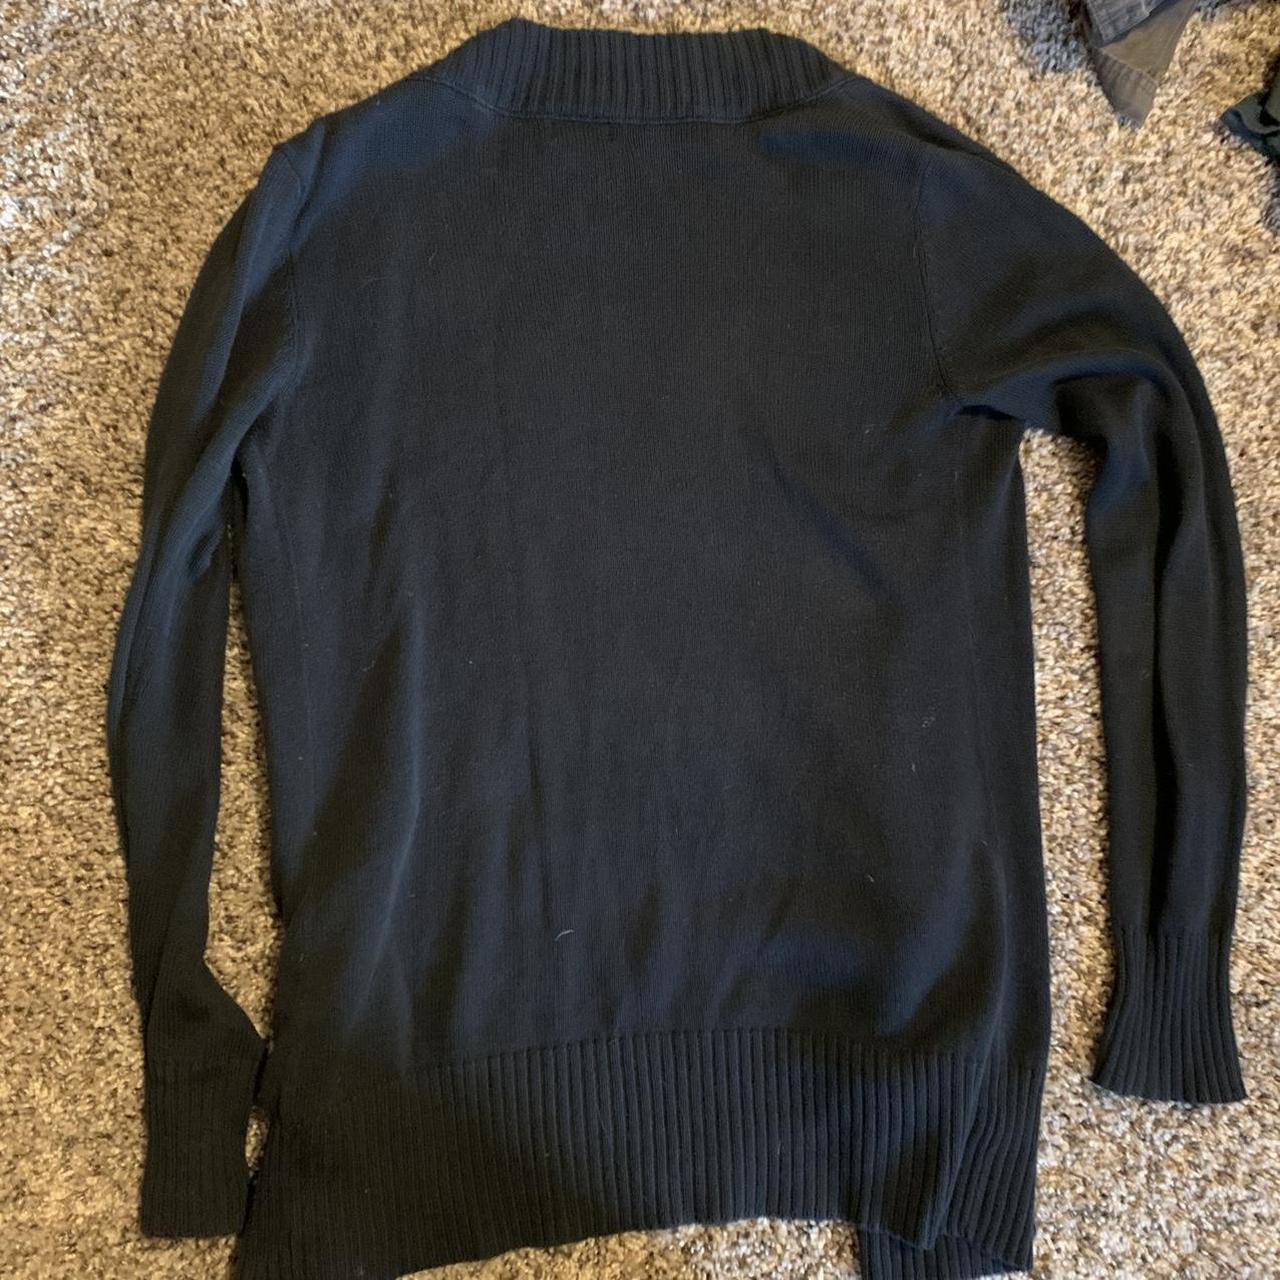 Long black mom cardigan sweater Bundle for 10%... - Depop